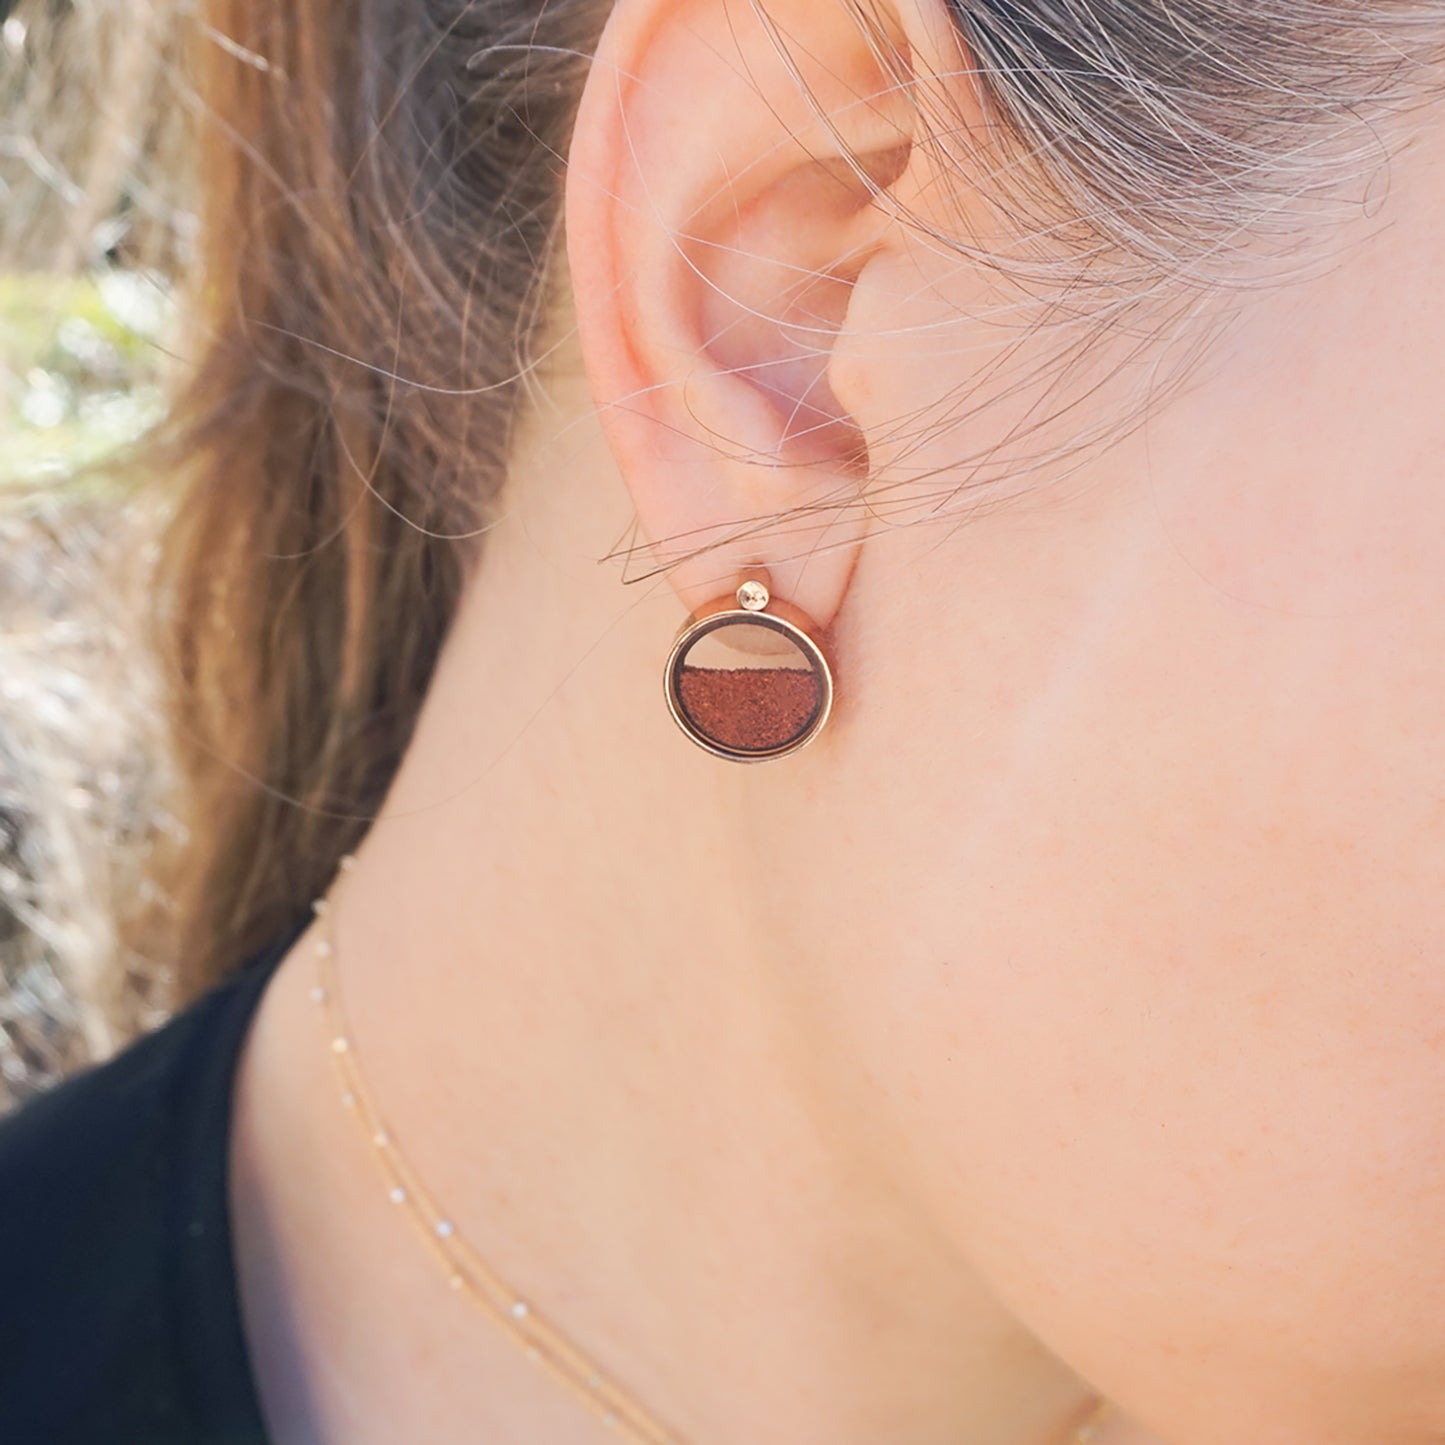 Australian Opal & Australian Red Sand Earrings